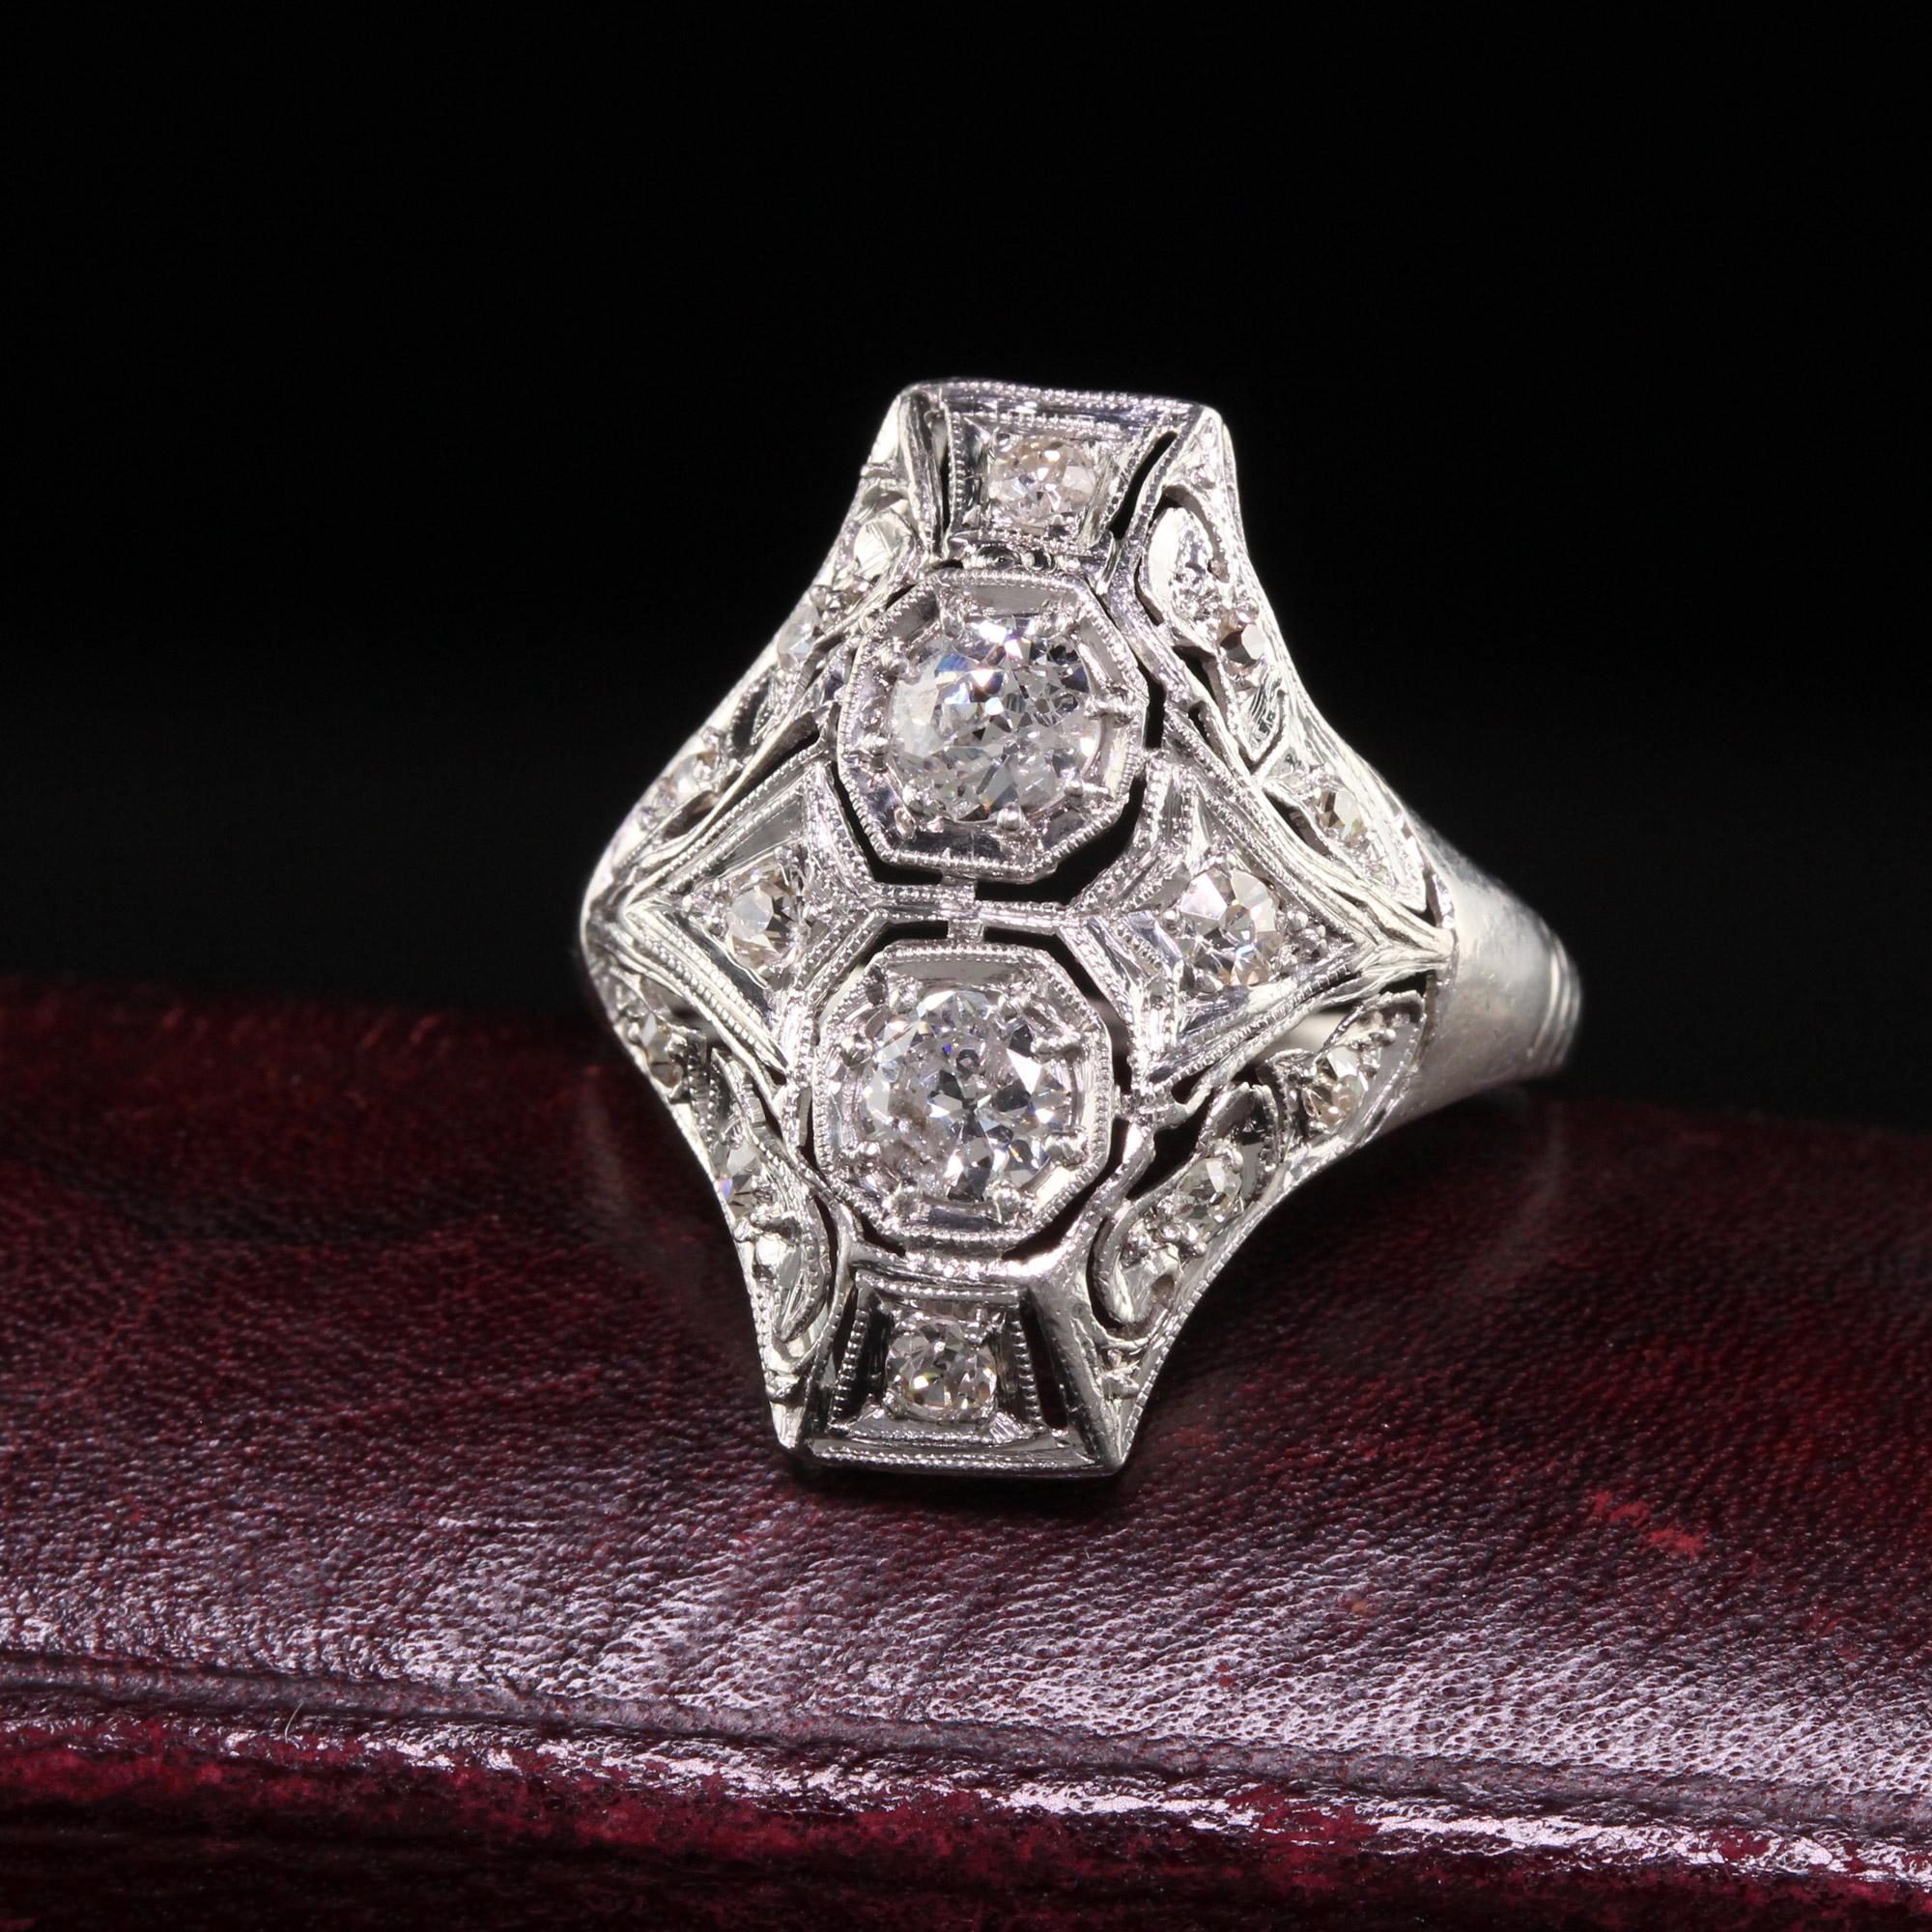 Schöne antike Art Deco Platin zwei Stein filigrane Schild Ring. Dieser wunderschöne Ring ist aus Platin gefertigt. Er ist mit Diamanten im alten europäischen Schliff besetzt, die auf einer filigranen Art-Déco-Fassung liegen.

Artikel #R1316

Metall: